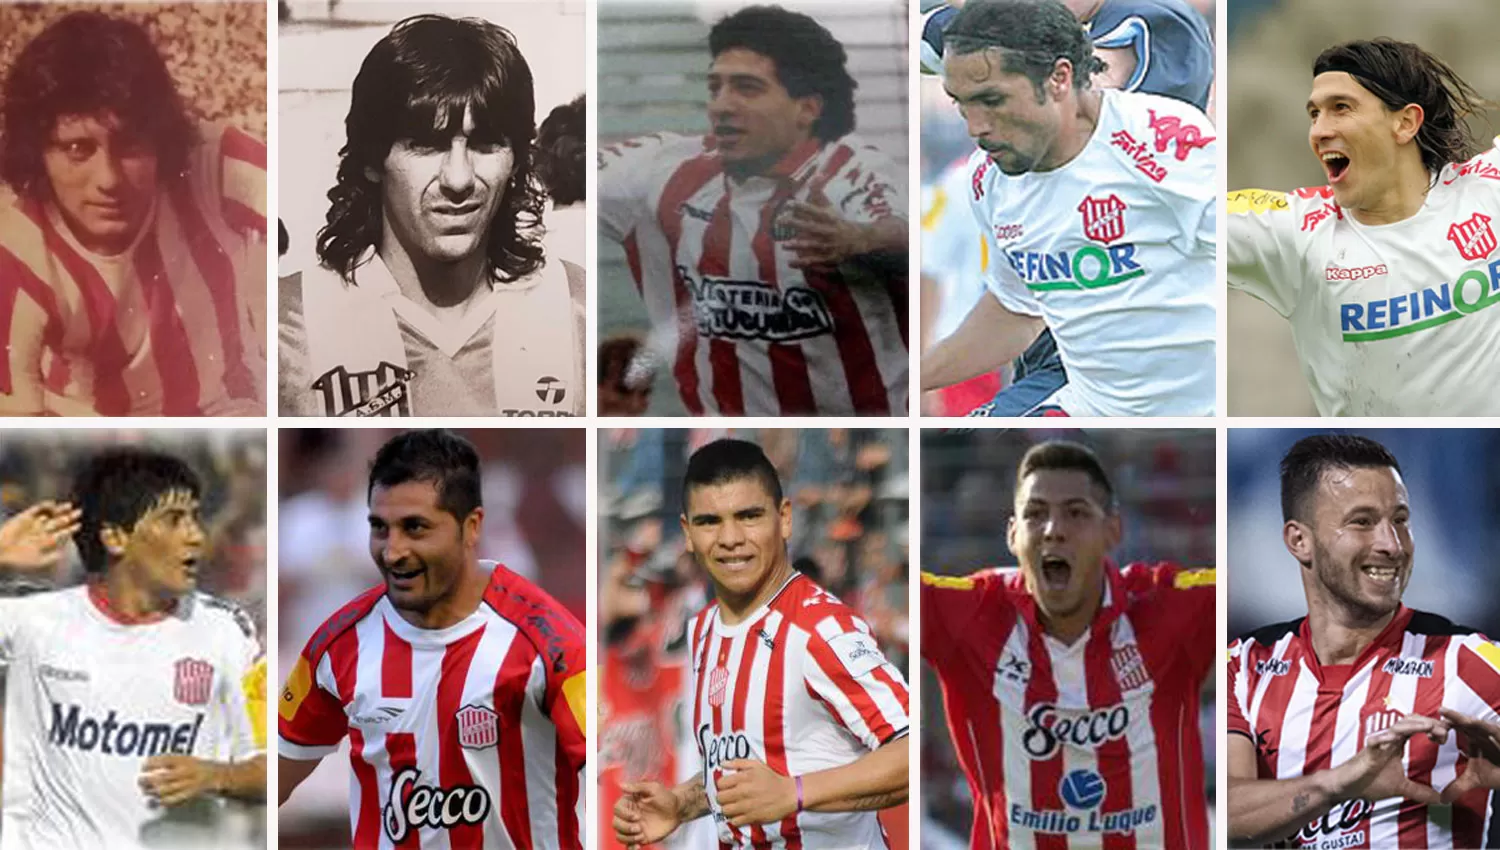 TODOS LOS GOLEADORES. Ignacio, Juárez, Zelaya, Morales, Ibáñez, Canío, Balvorín, Quiroga, Lentini y Pons, desde 1978 hasta la actualidad. 